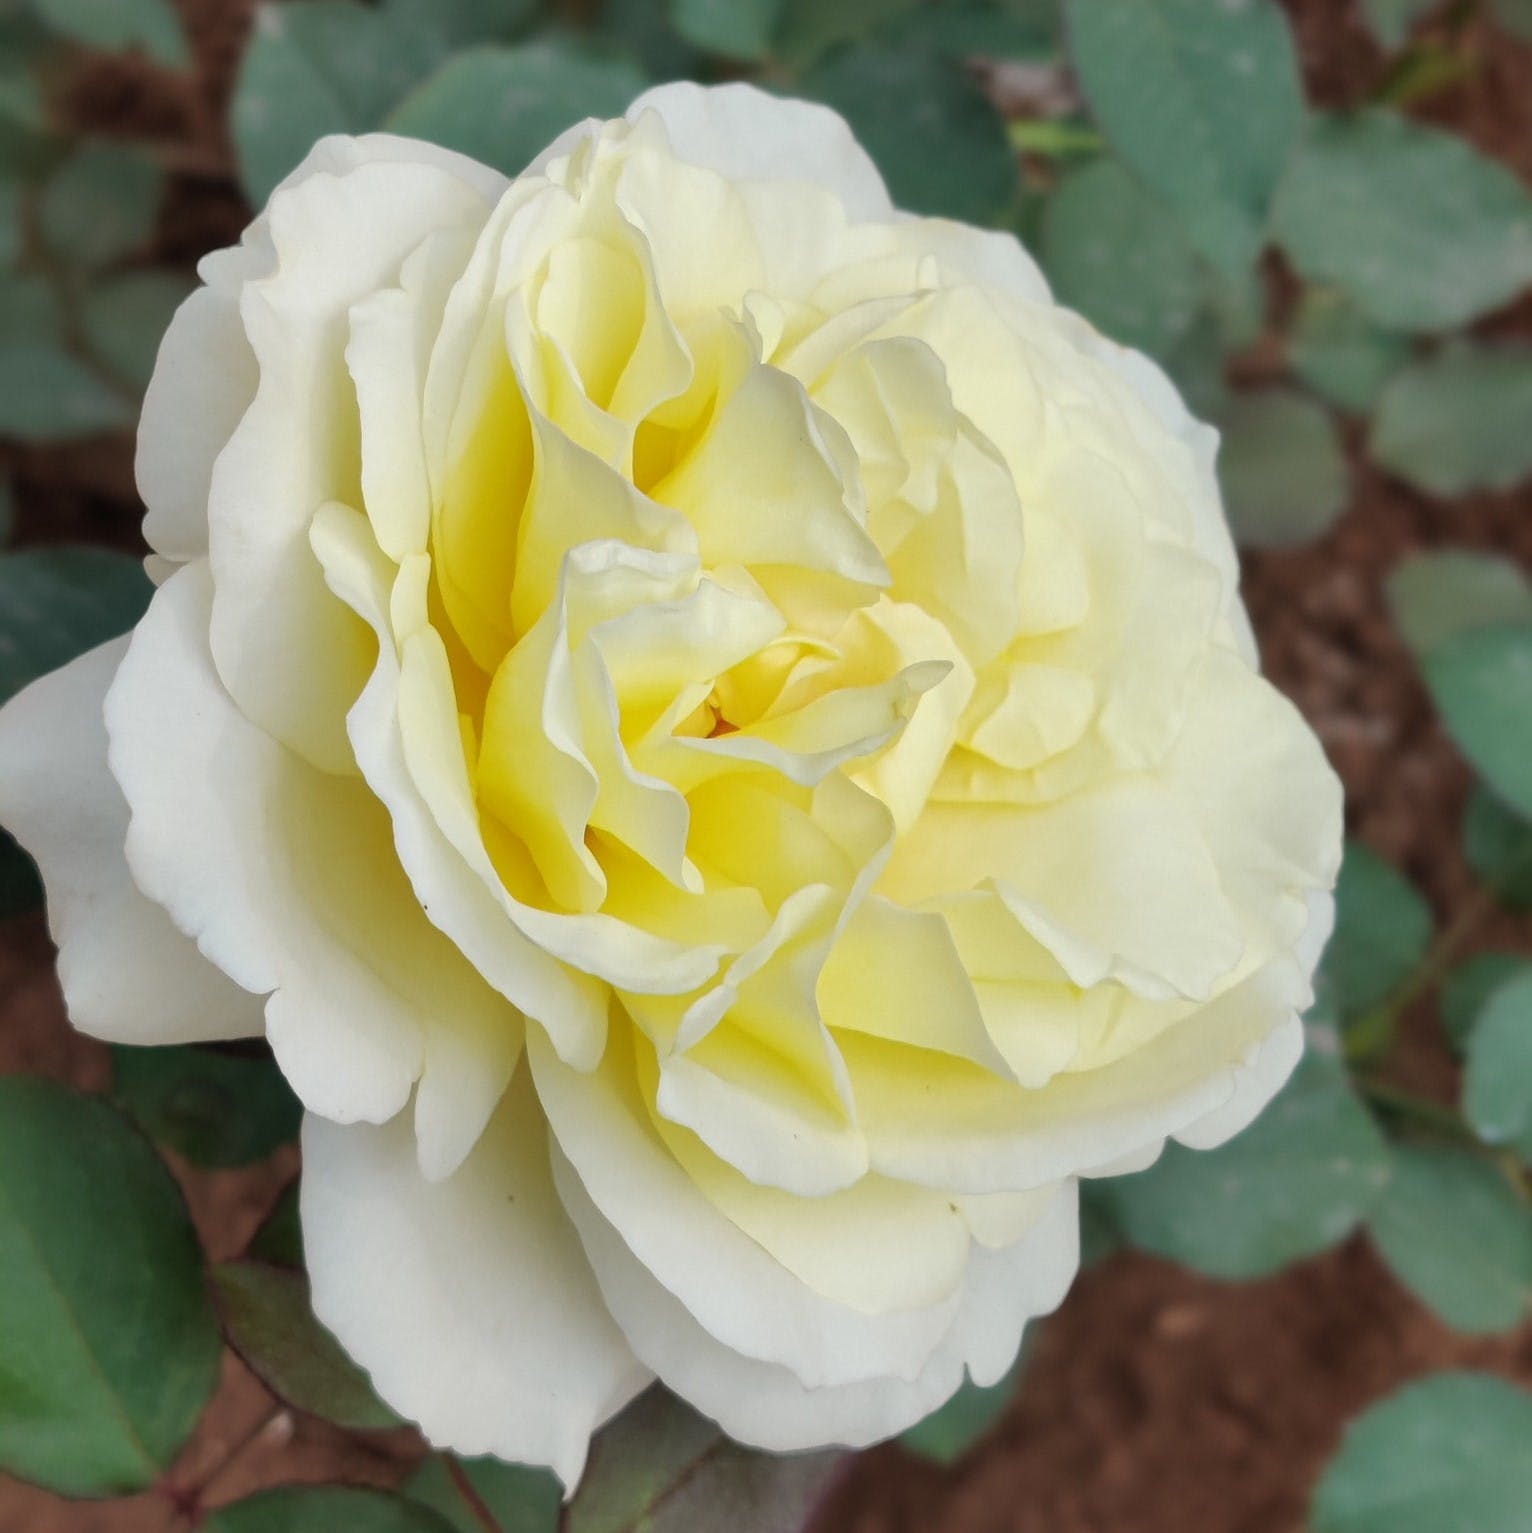 Flower,Plant,Petal,Botany,Hybrid tea rose,Rose,Garden roses,Flowering plant,Rosa × centifolia,Annual plant